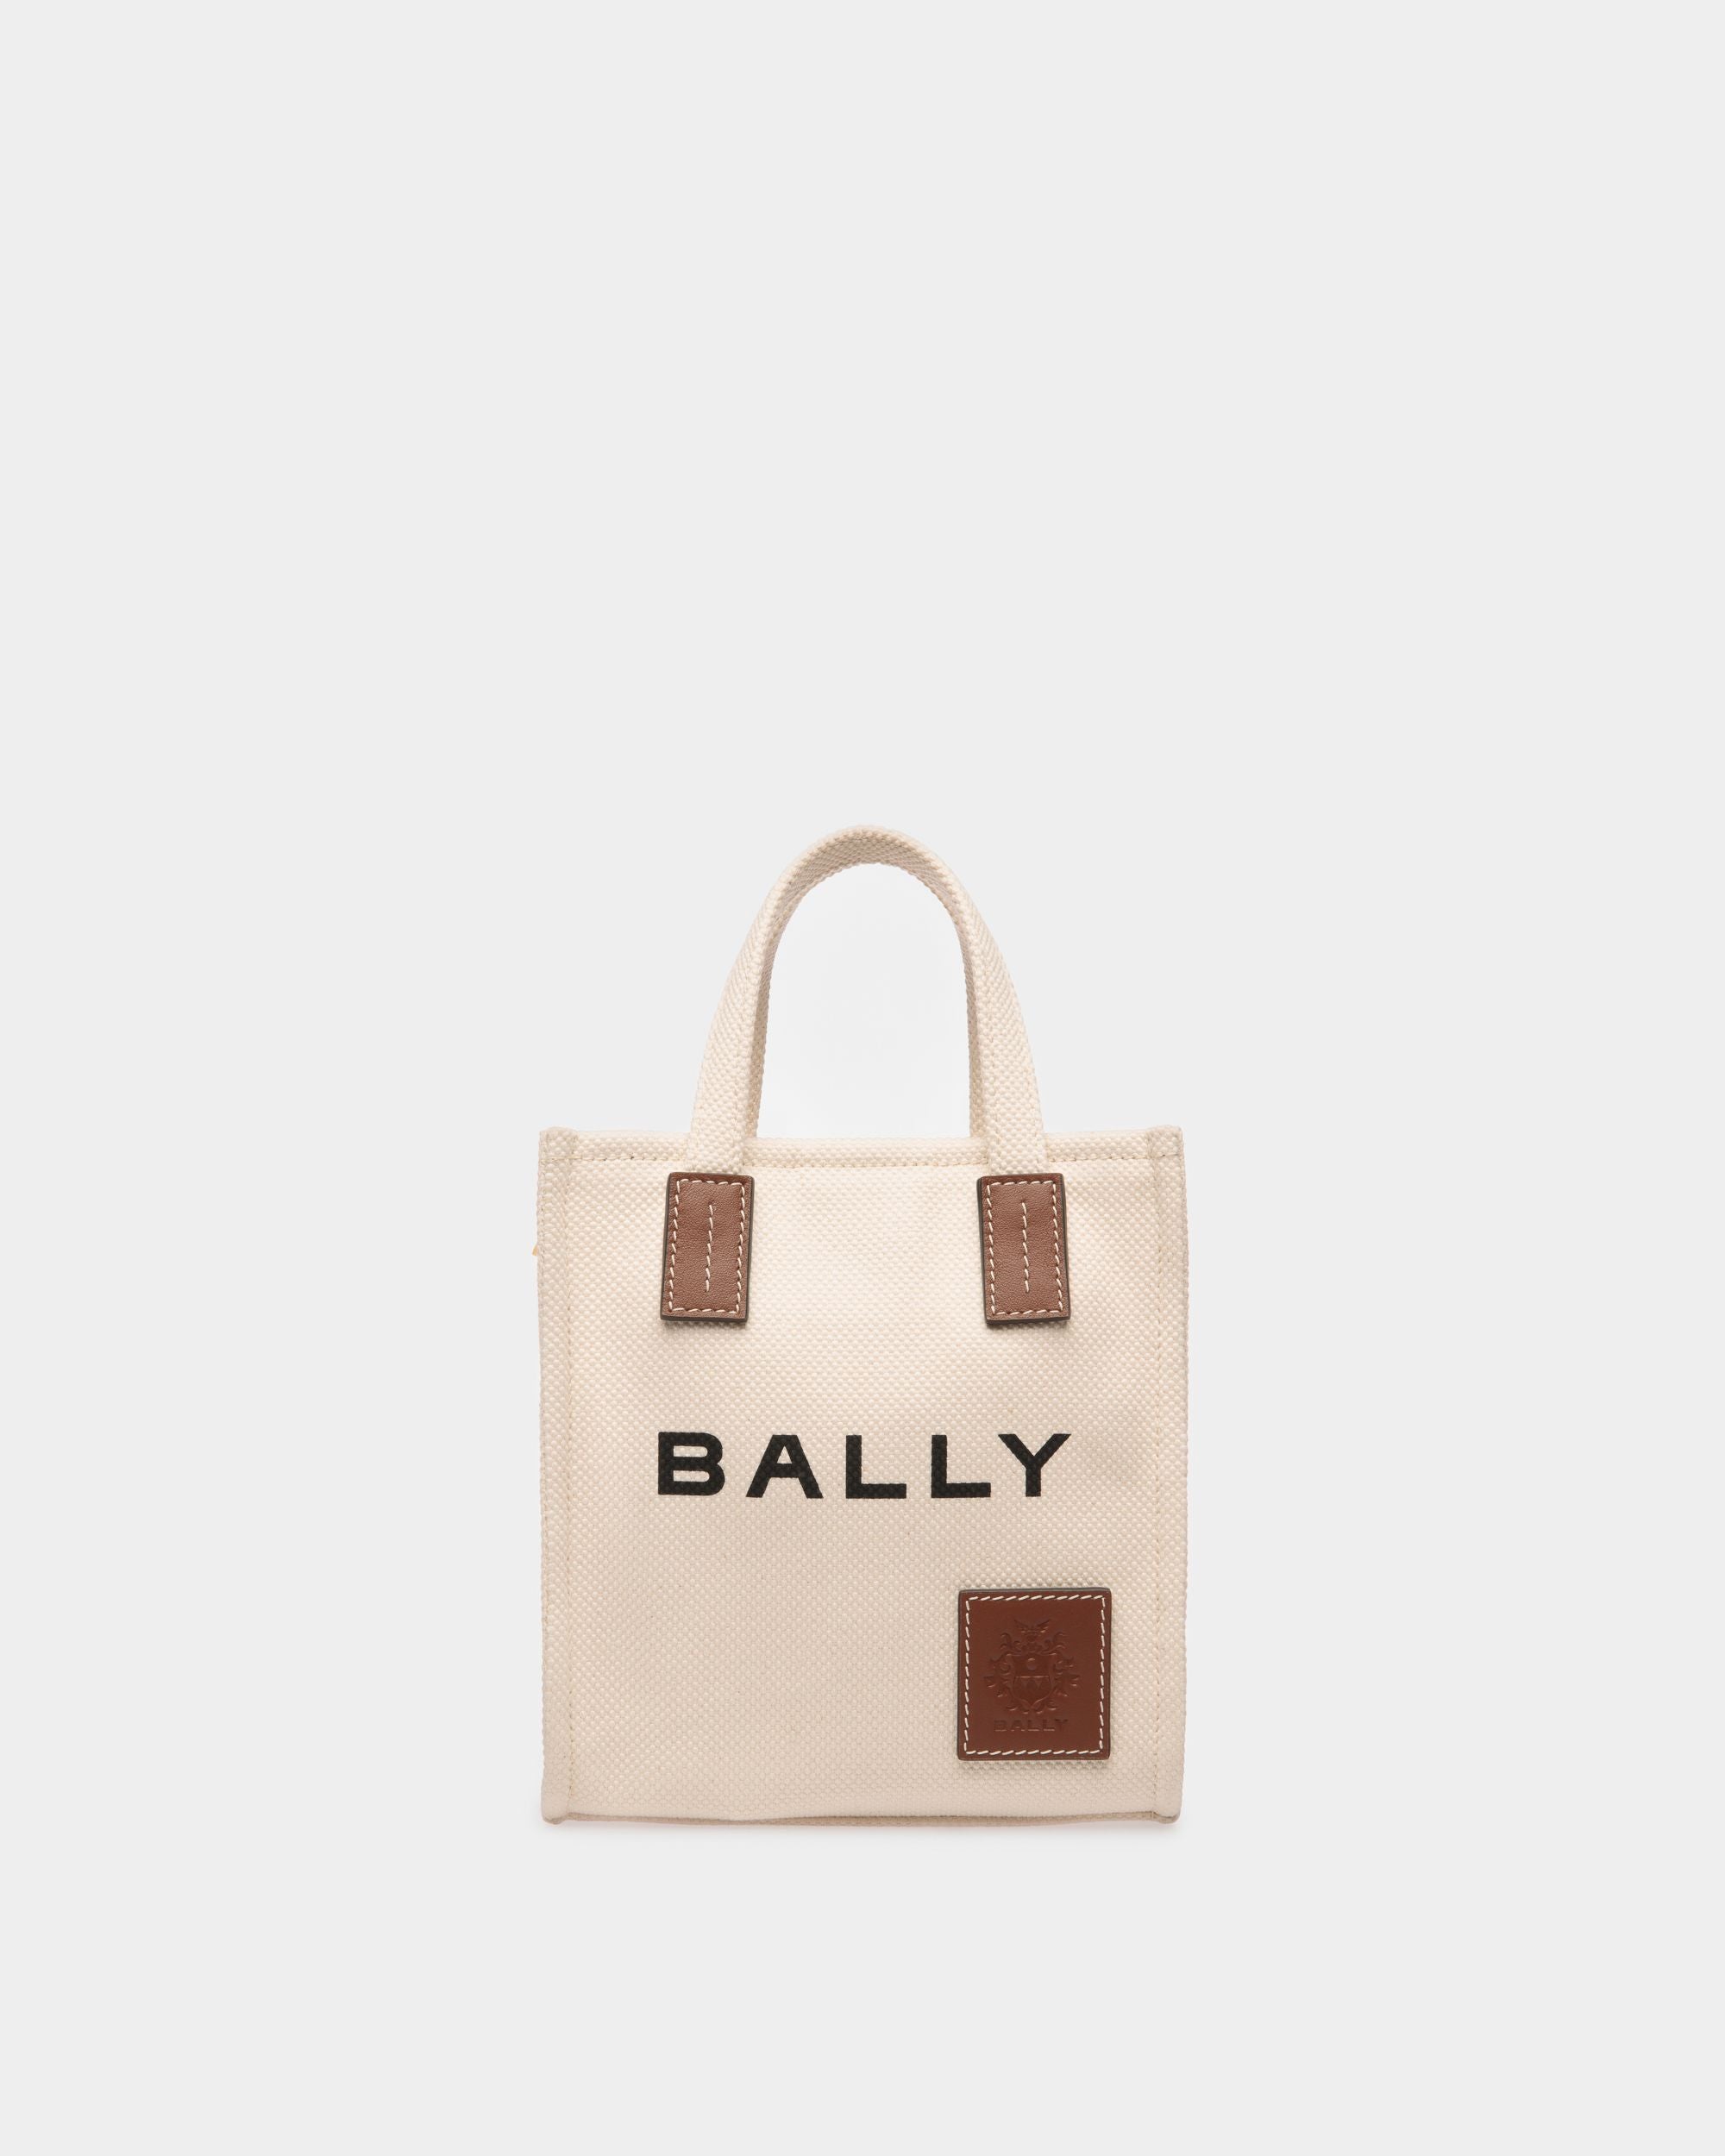 Akelei | Tote bag mini da donna in tela color neutro | Bally | Still Life Fronte